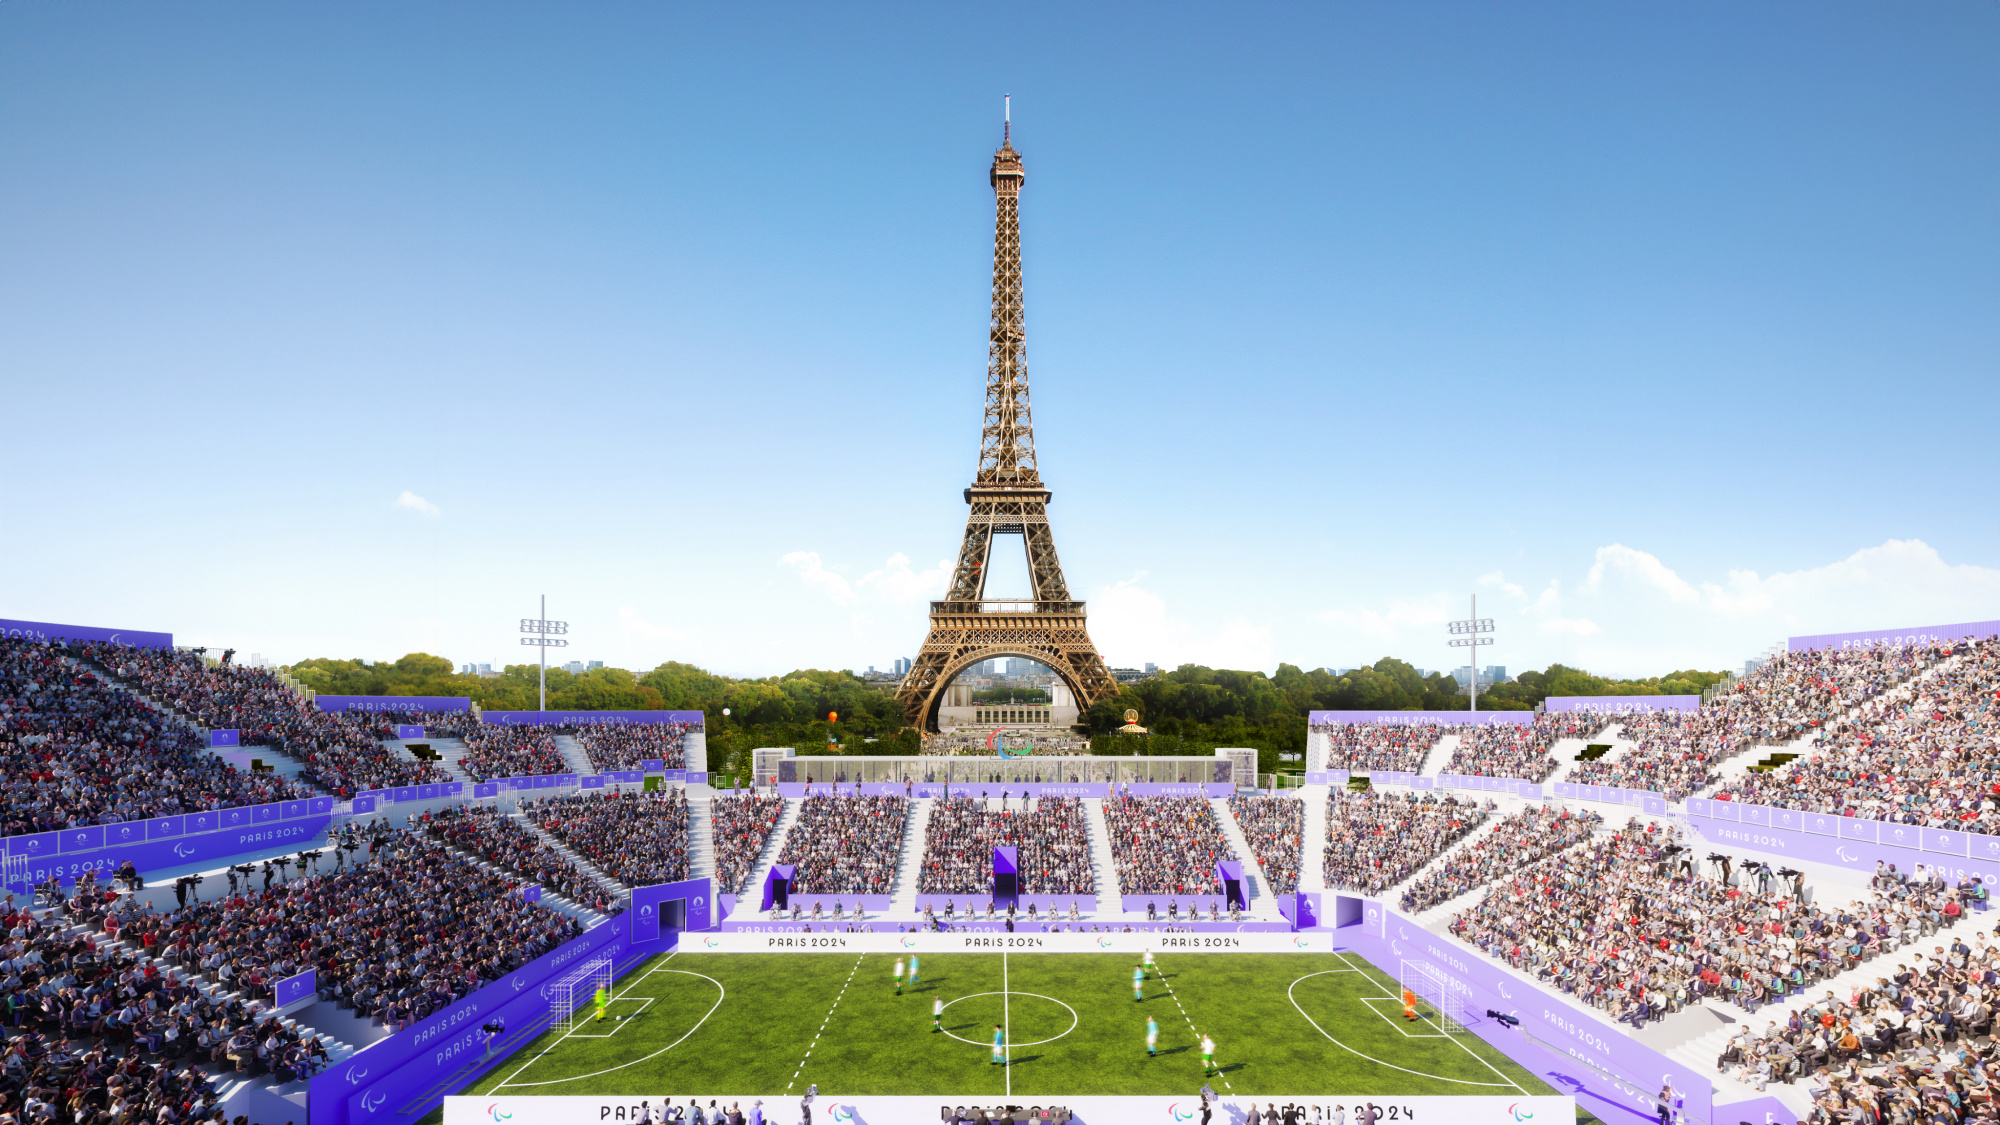 Eiffel Tower Stadium - Paris 2024